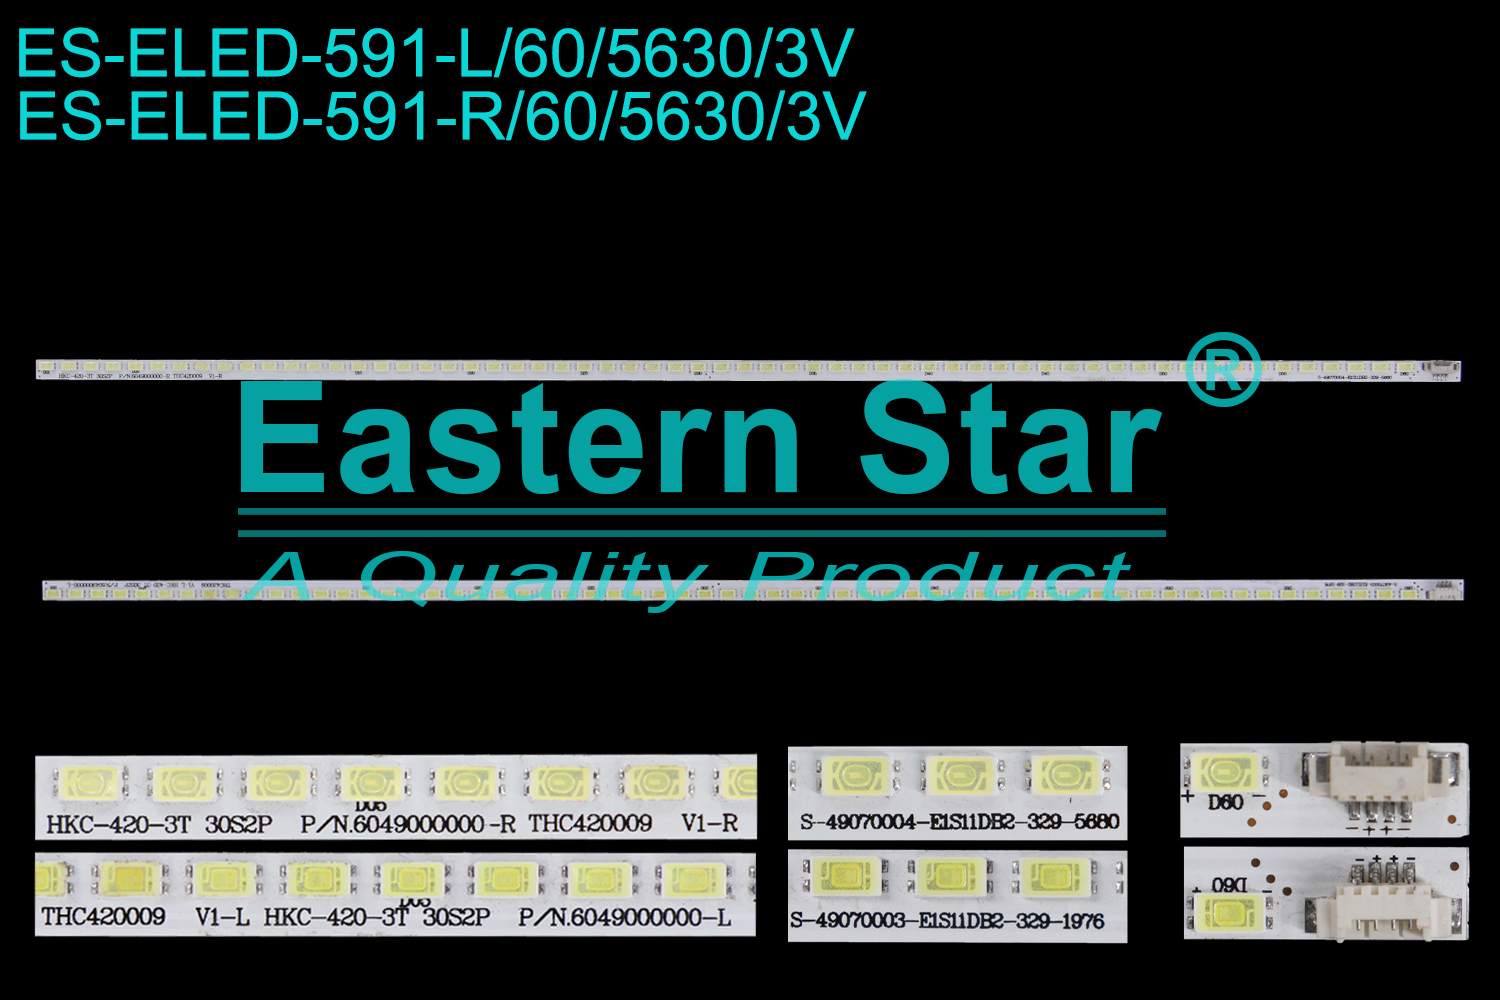 ES-ELED-591 ELED/EDGE TV backlight use for 42'' Sanyo/Hkc  HK420LEDM AH27H L: THC420009 V1-L HKC-420-3T 30S2P P/N.6049000000-L S-49070003-E1S11DB2-329-1976 R: THC420009 V1-R HKC-420-3T 30S2P P/N.6049000000-R S-49070004-E1S11DB2-329-5680 LED STRIPS(2)